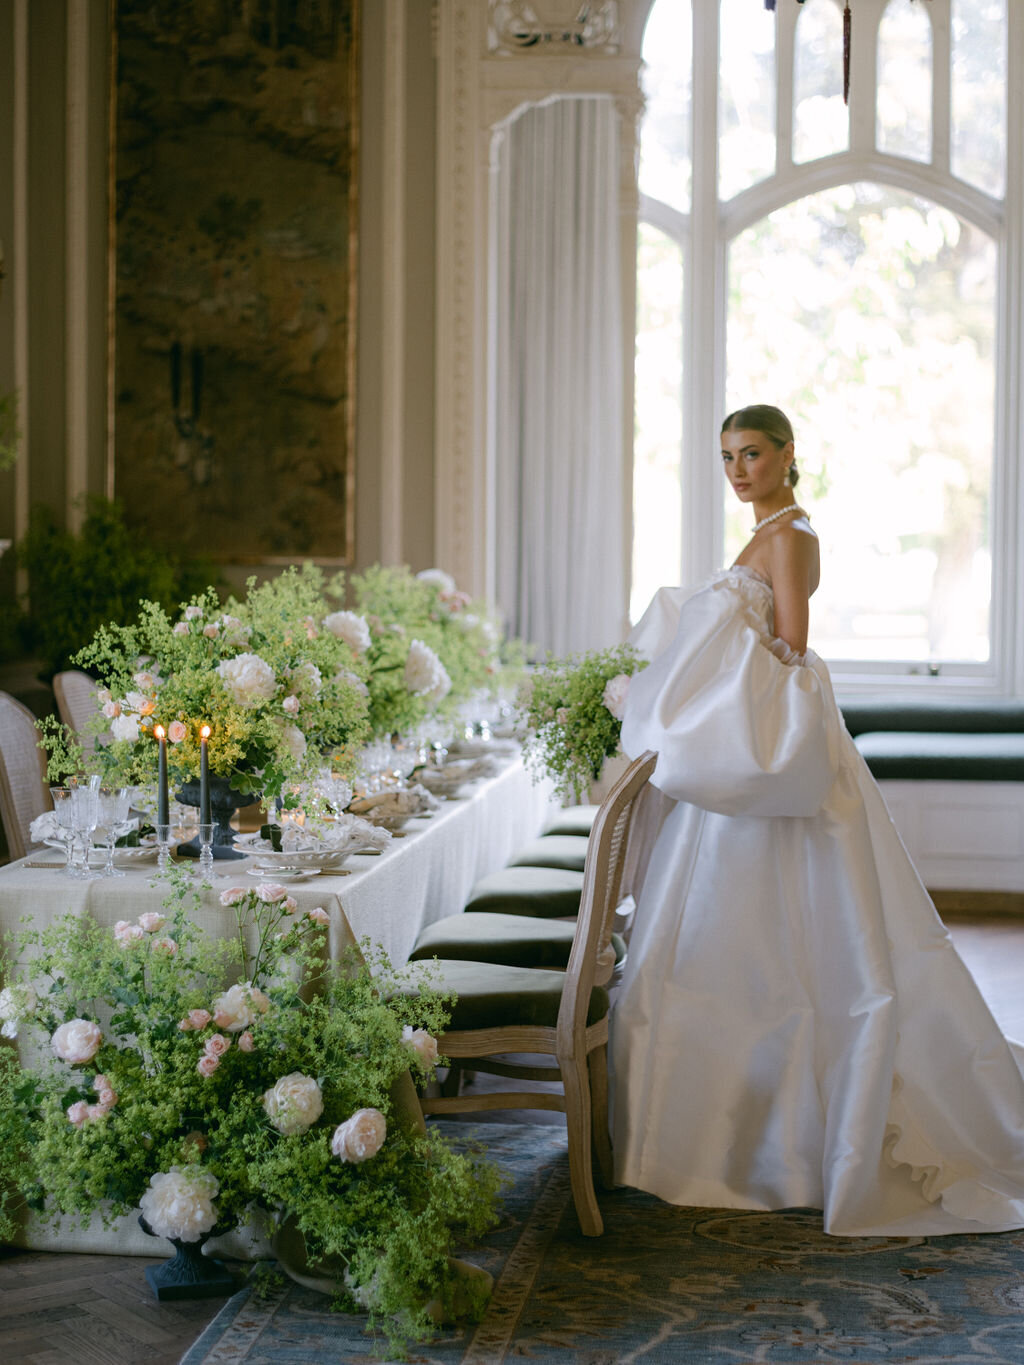 Attabara Studio UK Luxury Wedding Planners  with Katie Julia-IconicEditorial-OakleyCourt-426